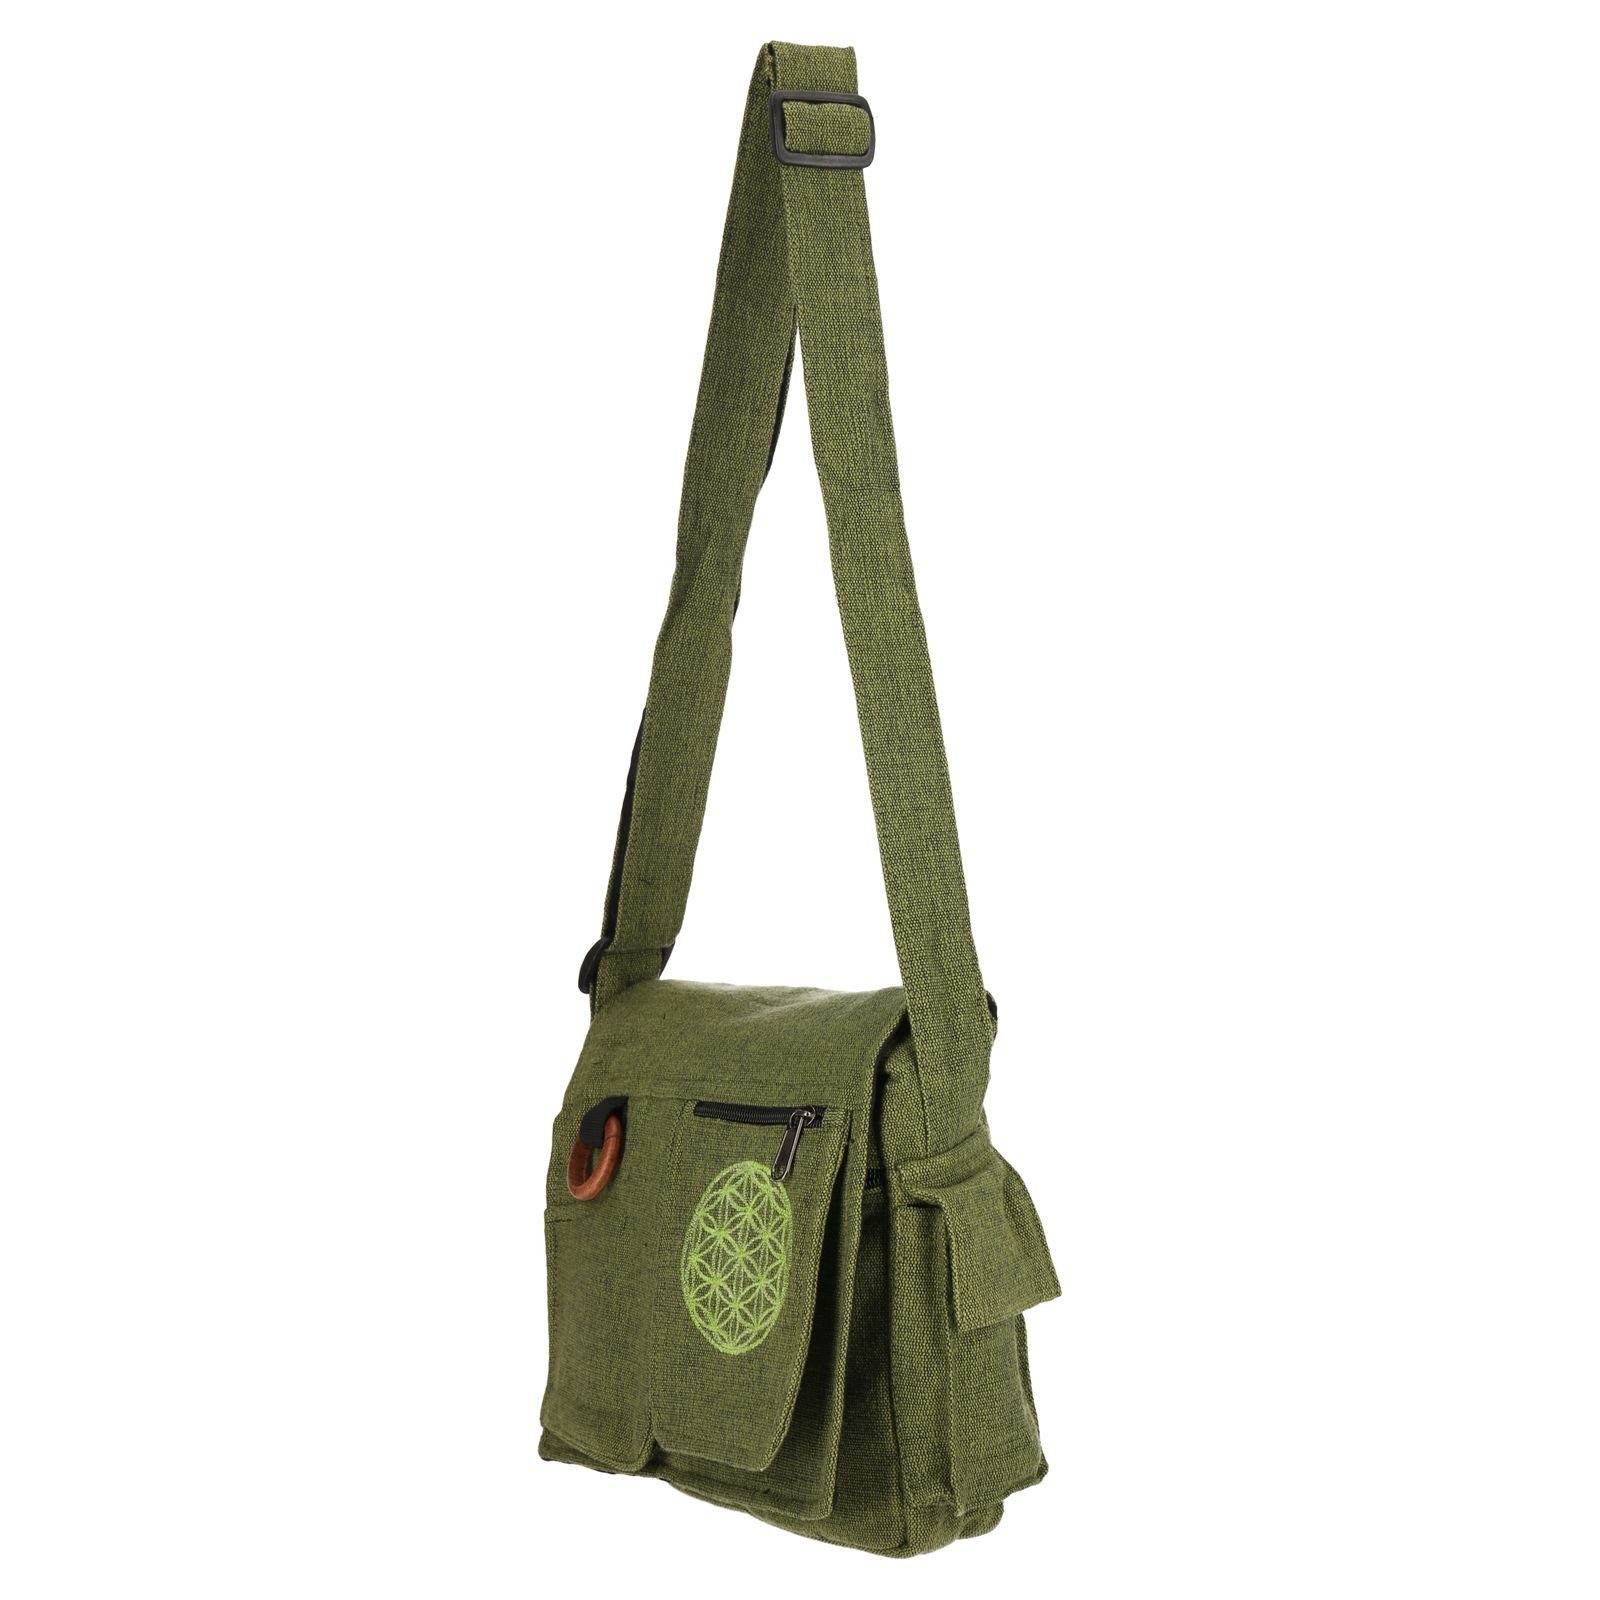 KUNST UND MAGIE Lebensblume +Schulterriemen Schultertasche Handtasche Umhängetasche Hippie Grün Tasche